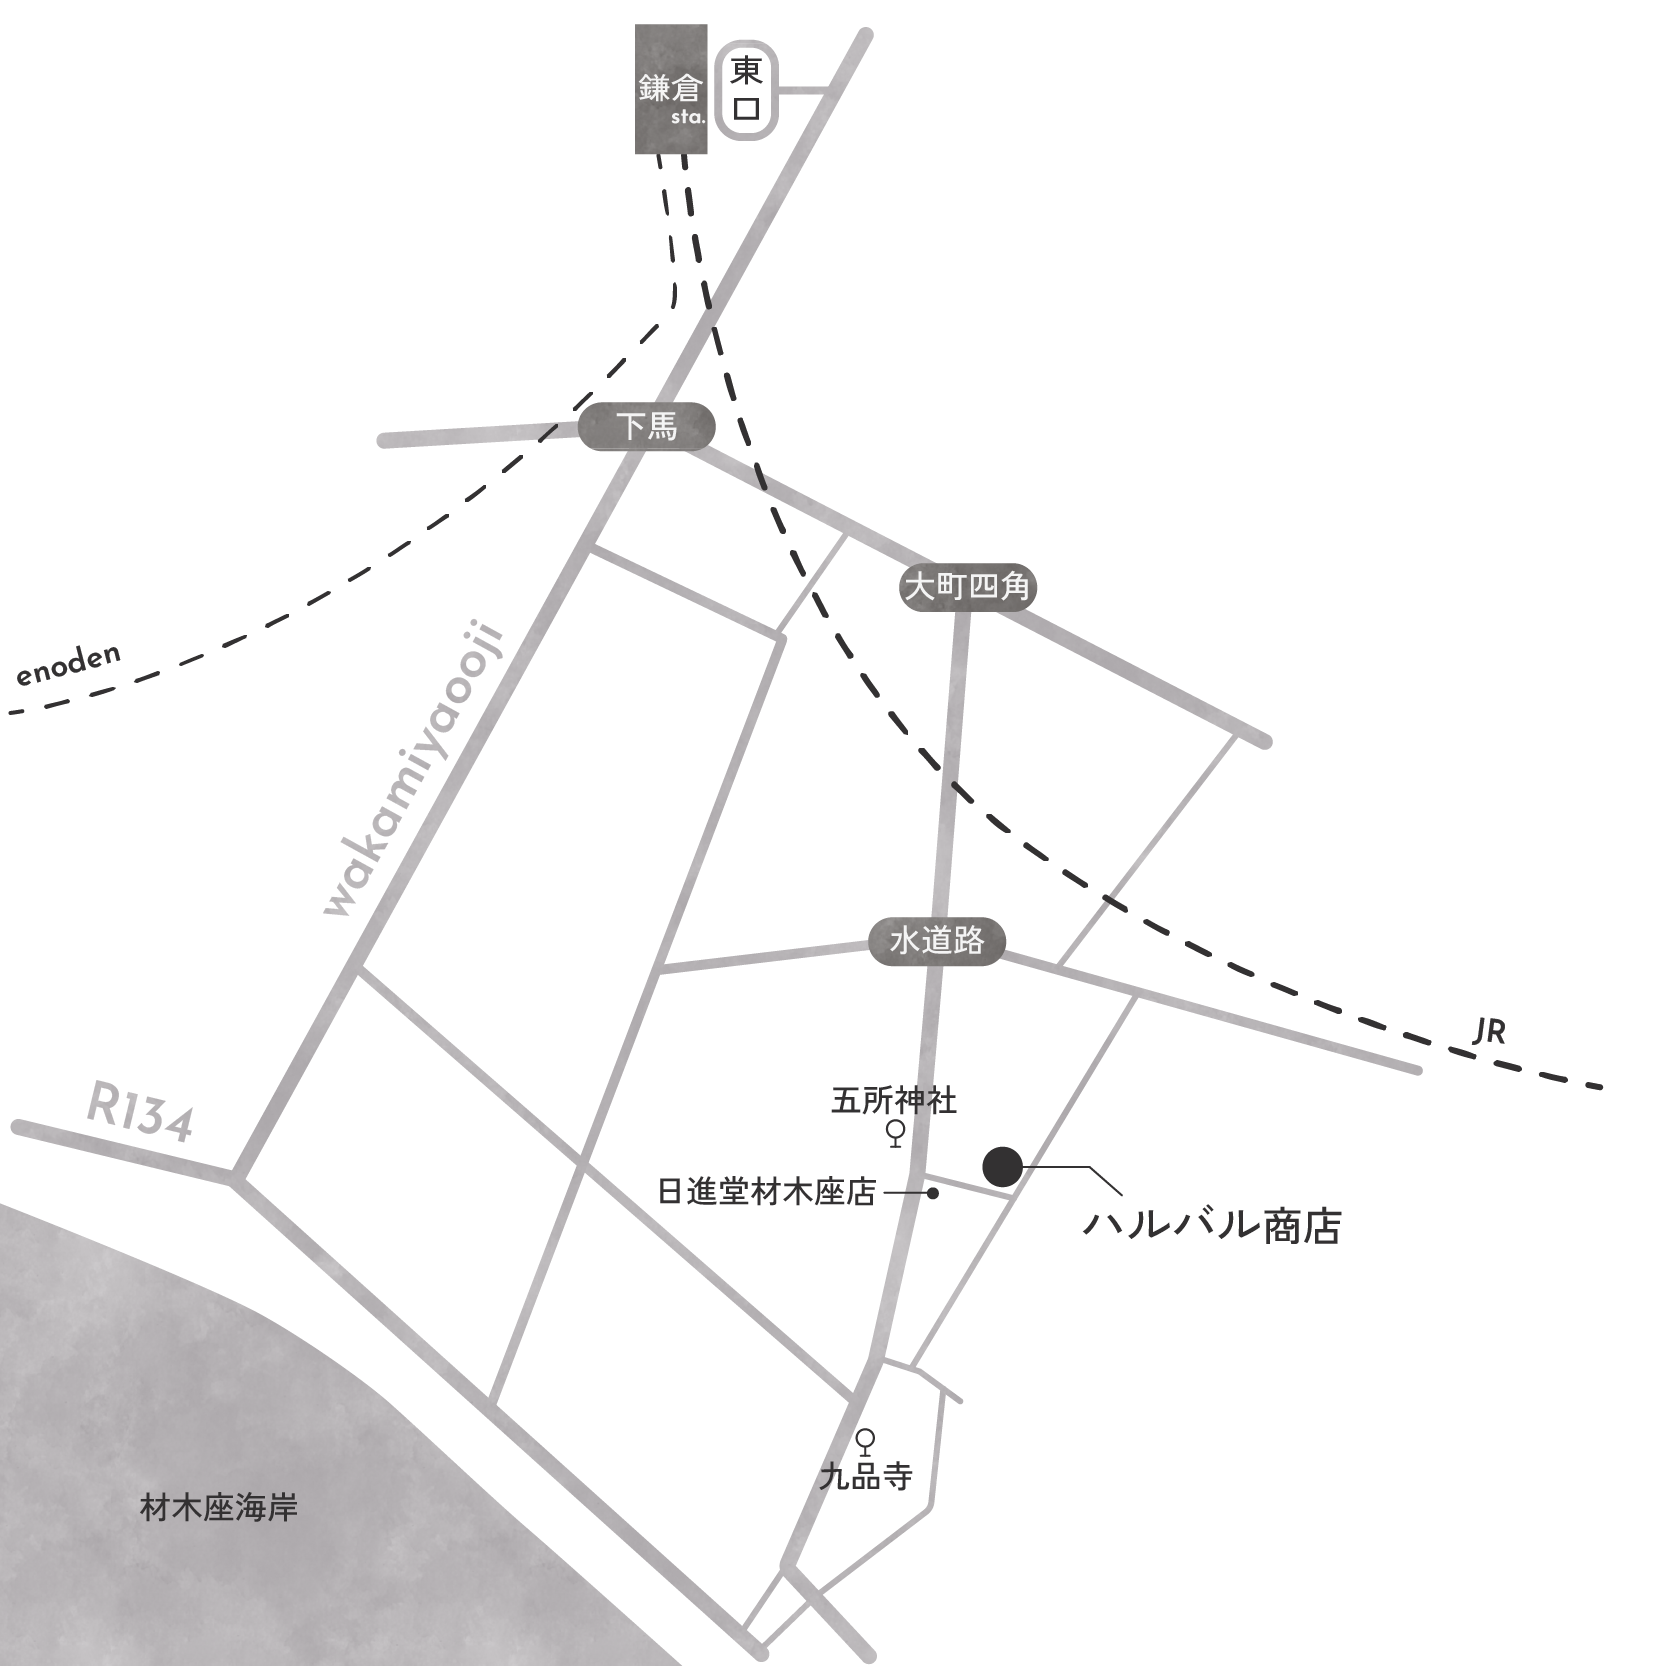 ハルバル商店マップ